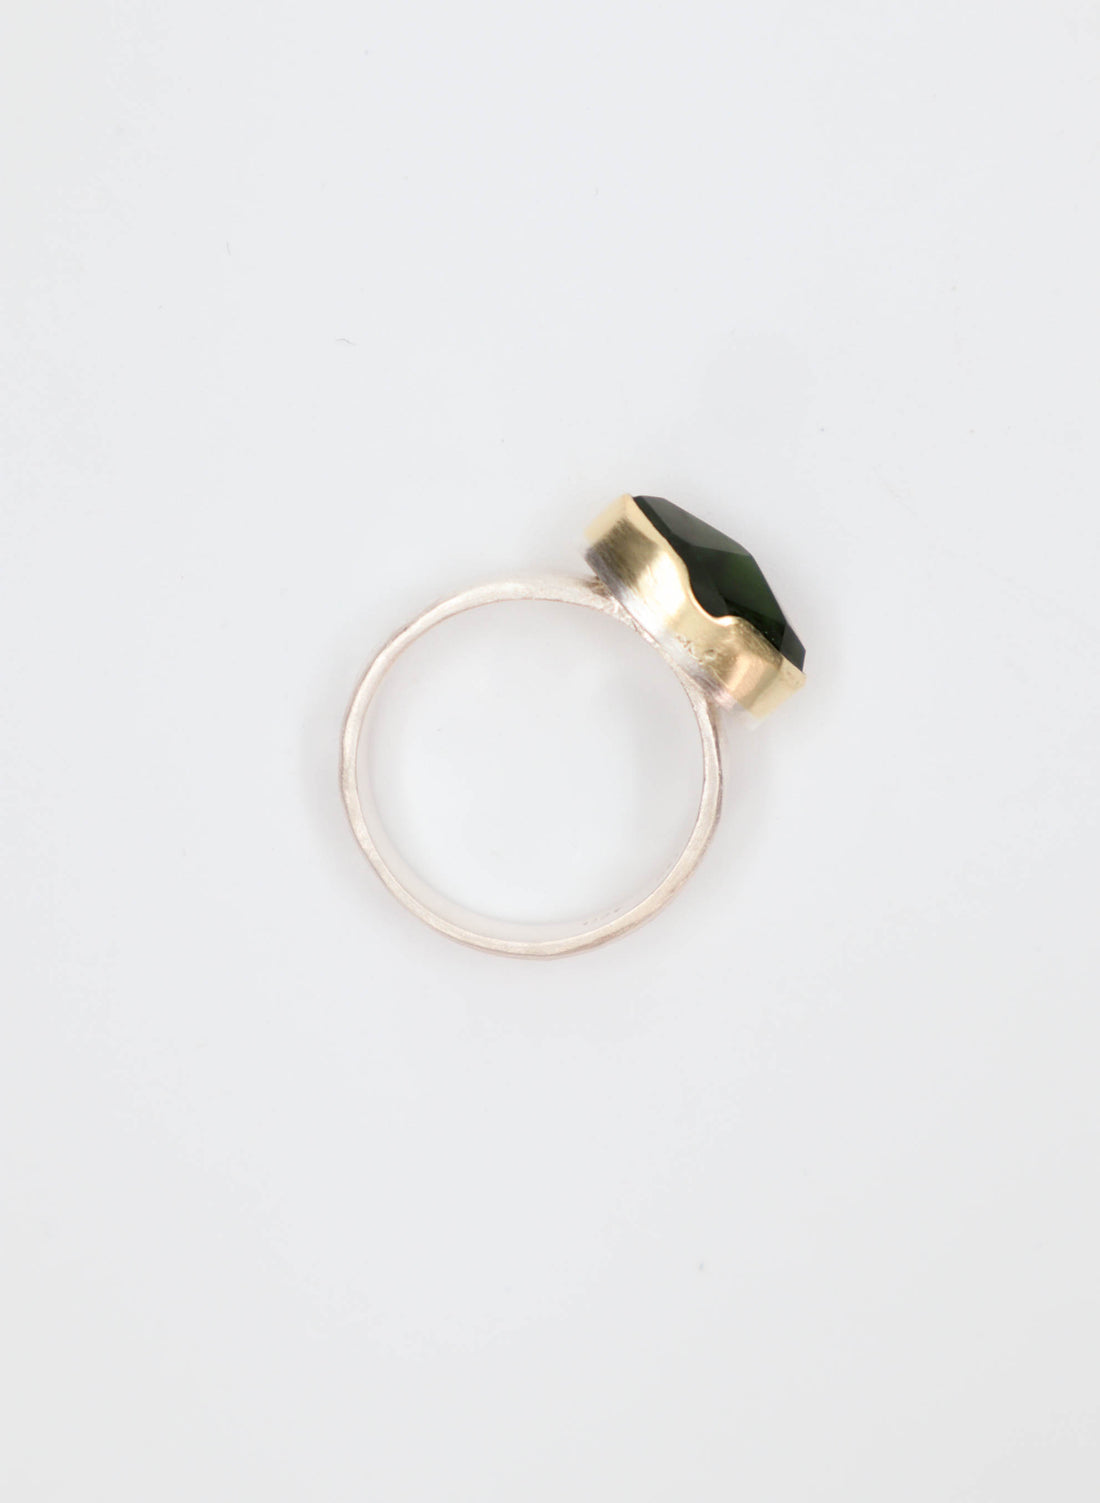 Dual Silver, Gold and Pounamu Ring